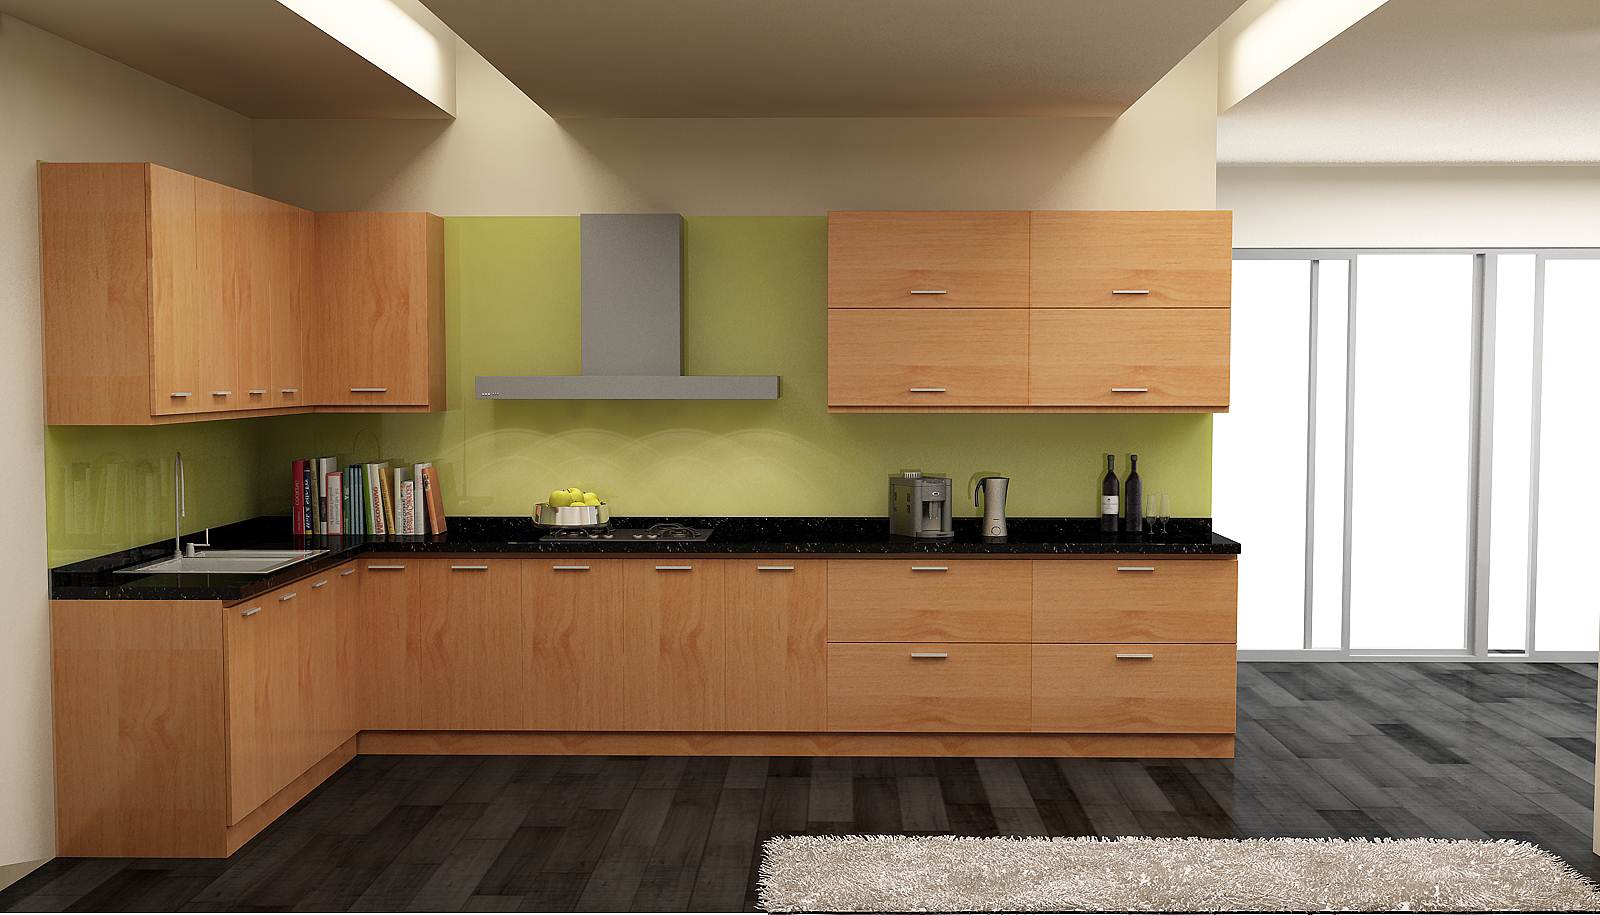 Với tủ bếp Melamine ML-04, bạn sẽ không cần phải lo lắng về chất lượng và độ bền cao của tủ bếp. Thiết kế đẹp mắt, chất liệu bền chắc, độ bền cao và độ chống trầy xước tuyệt vời. Tủ bếp Melamine ML-04 sẽ mang đến cho không gian bếp của bạn một vẻ đẹp tinh tế và hiện đại.